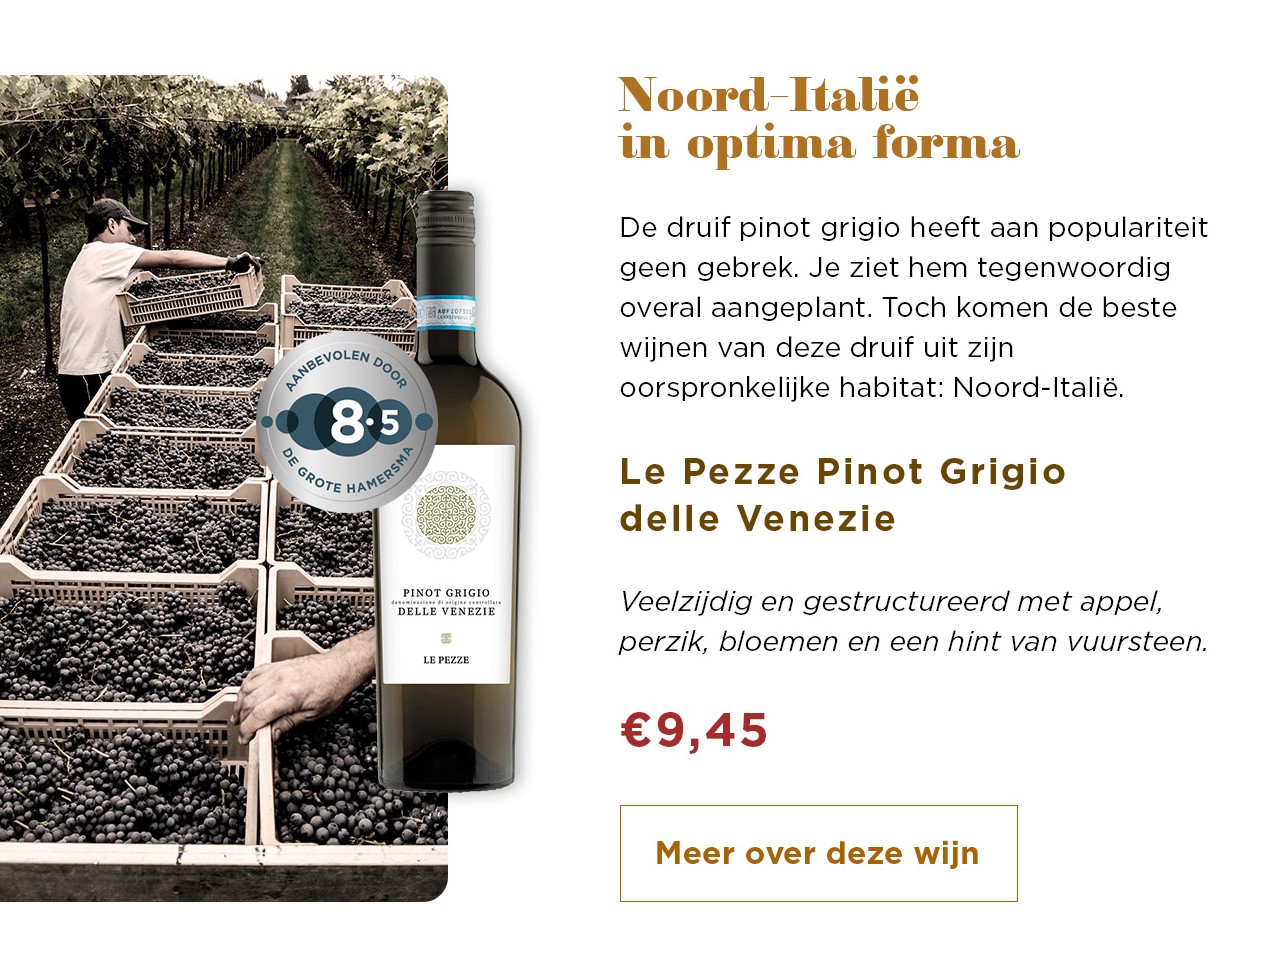 Noord-Italie in optima forma | Le Pezze Pinot Grigio delle Venezie voor € 9,45 | Meer over deze wijn